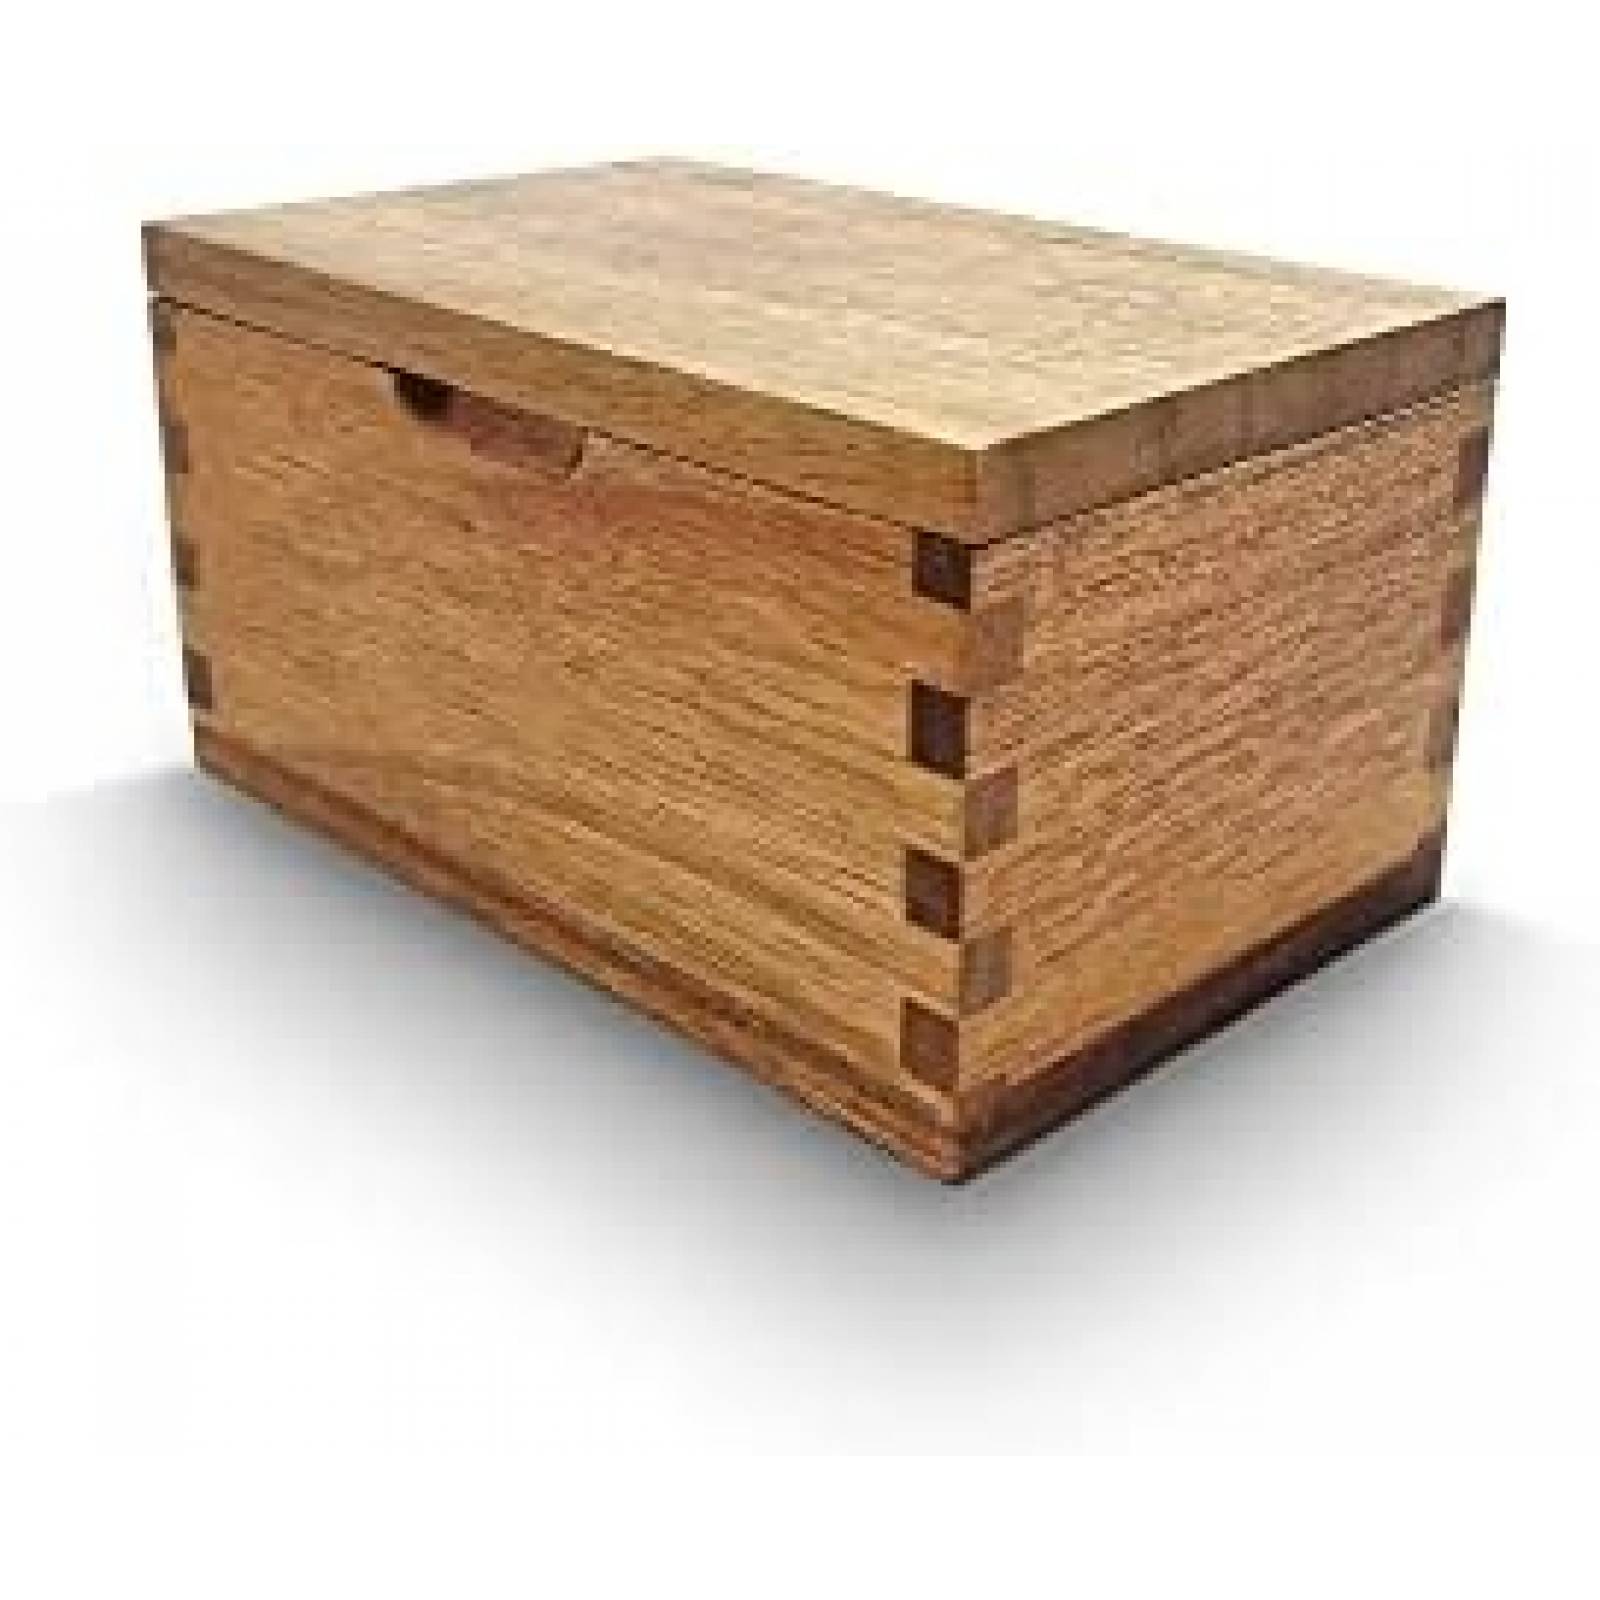 Cajas de almacenaje con tapa madera natural x3 